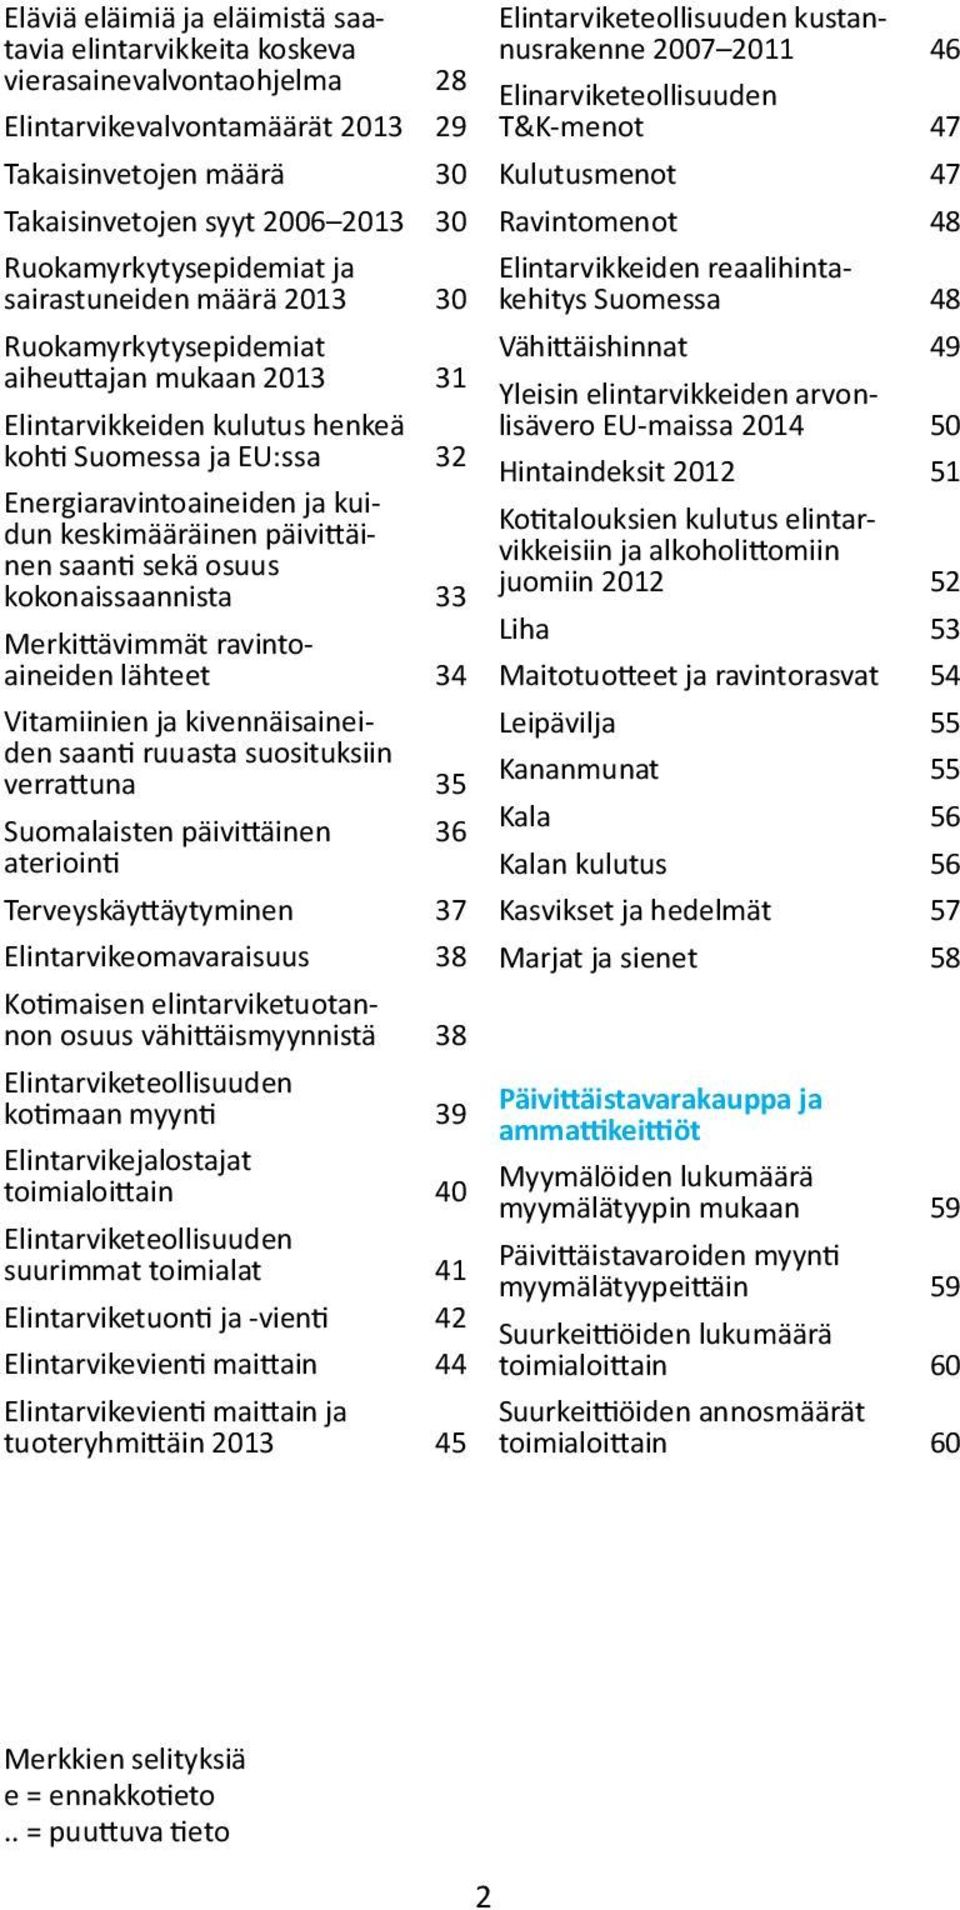 34 Vitamiinien ja kivennäisaineiden saanti ruuasta suosituksiin verrattuna 35 Suomalaisten päivittäinen 36 ateriointi Terveyskäyttäytyminen 37 Elintarvikeomavaraisuus 38 Kotimaisen